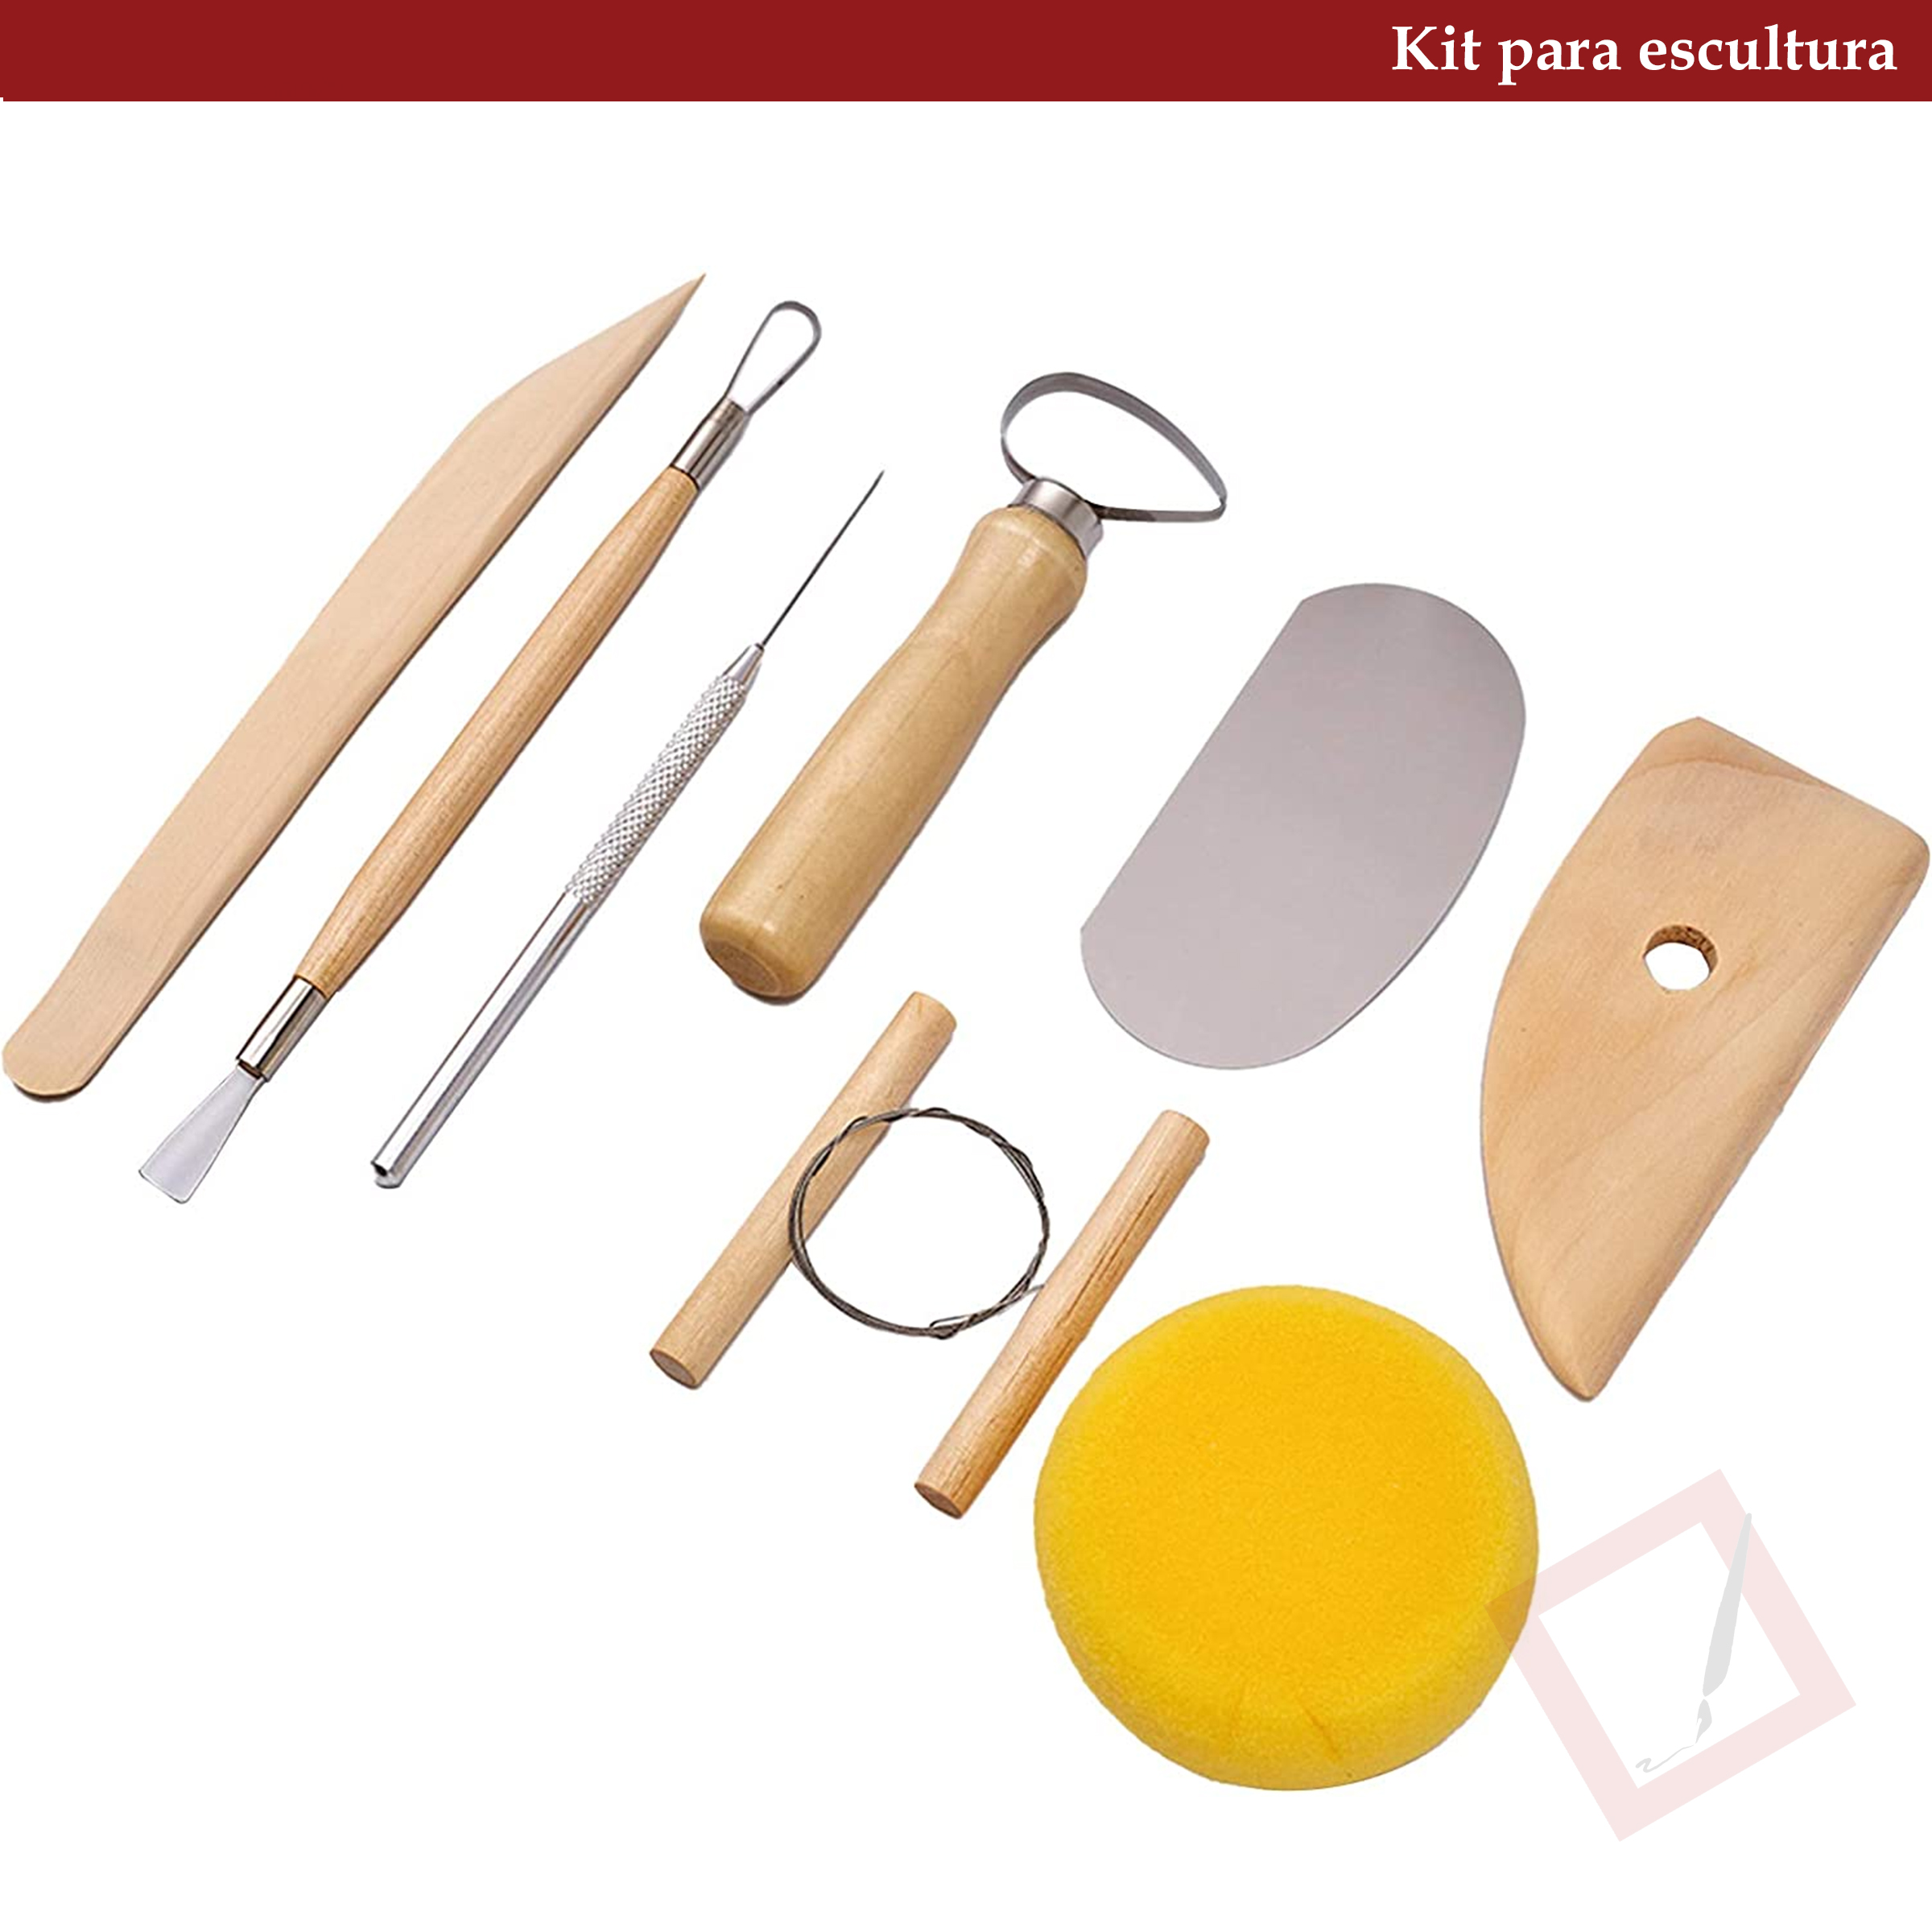 Kit de 8 herramientas para Escultura, cerámica, arcilla – PRECISE